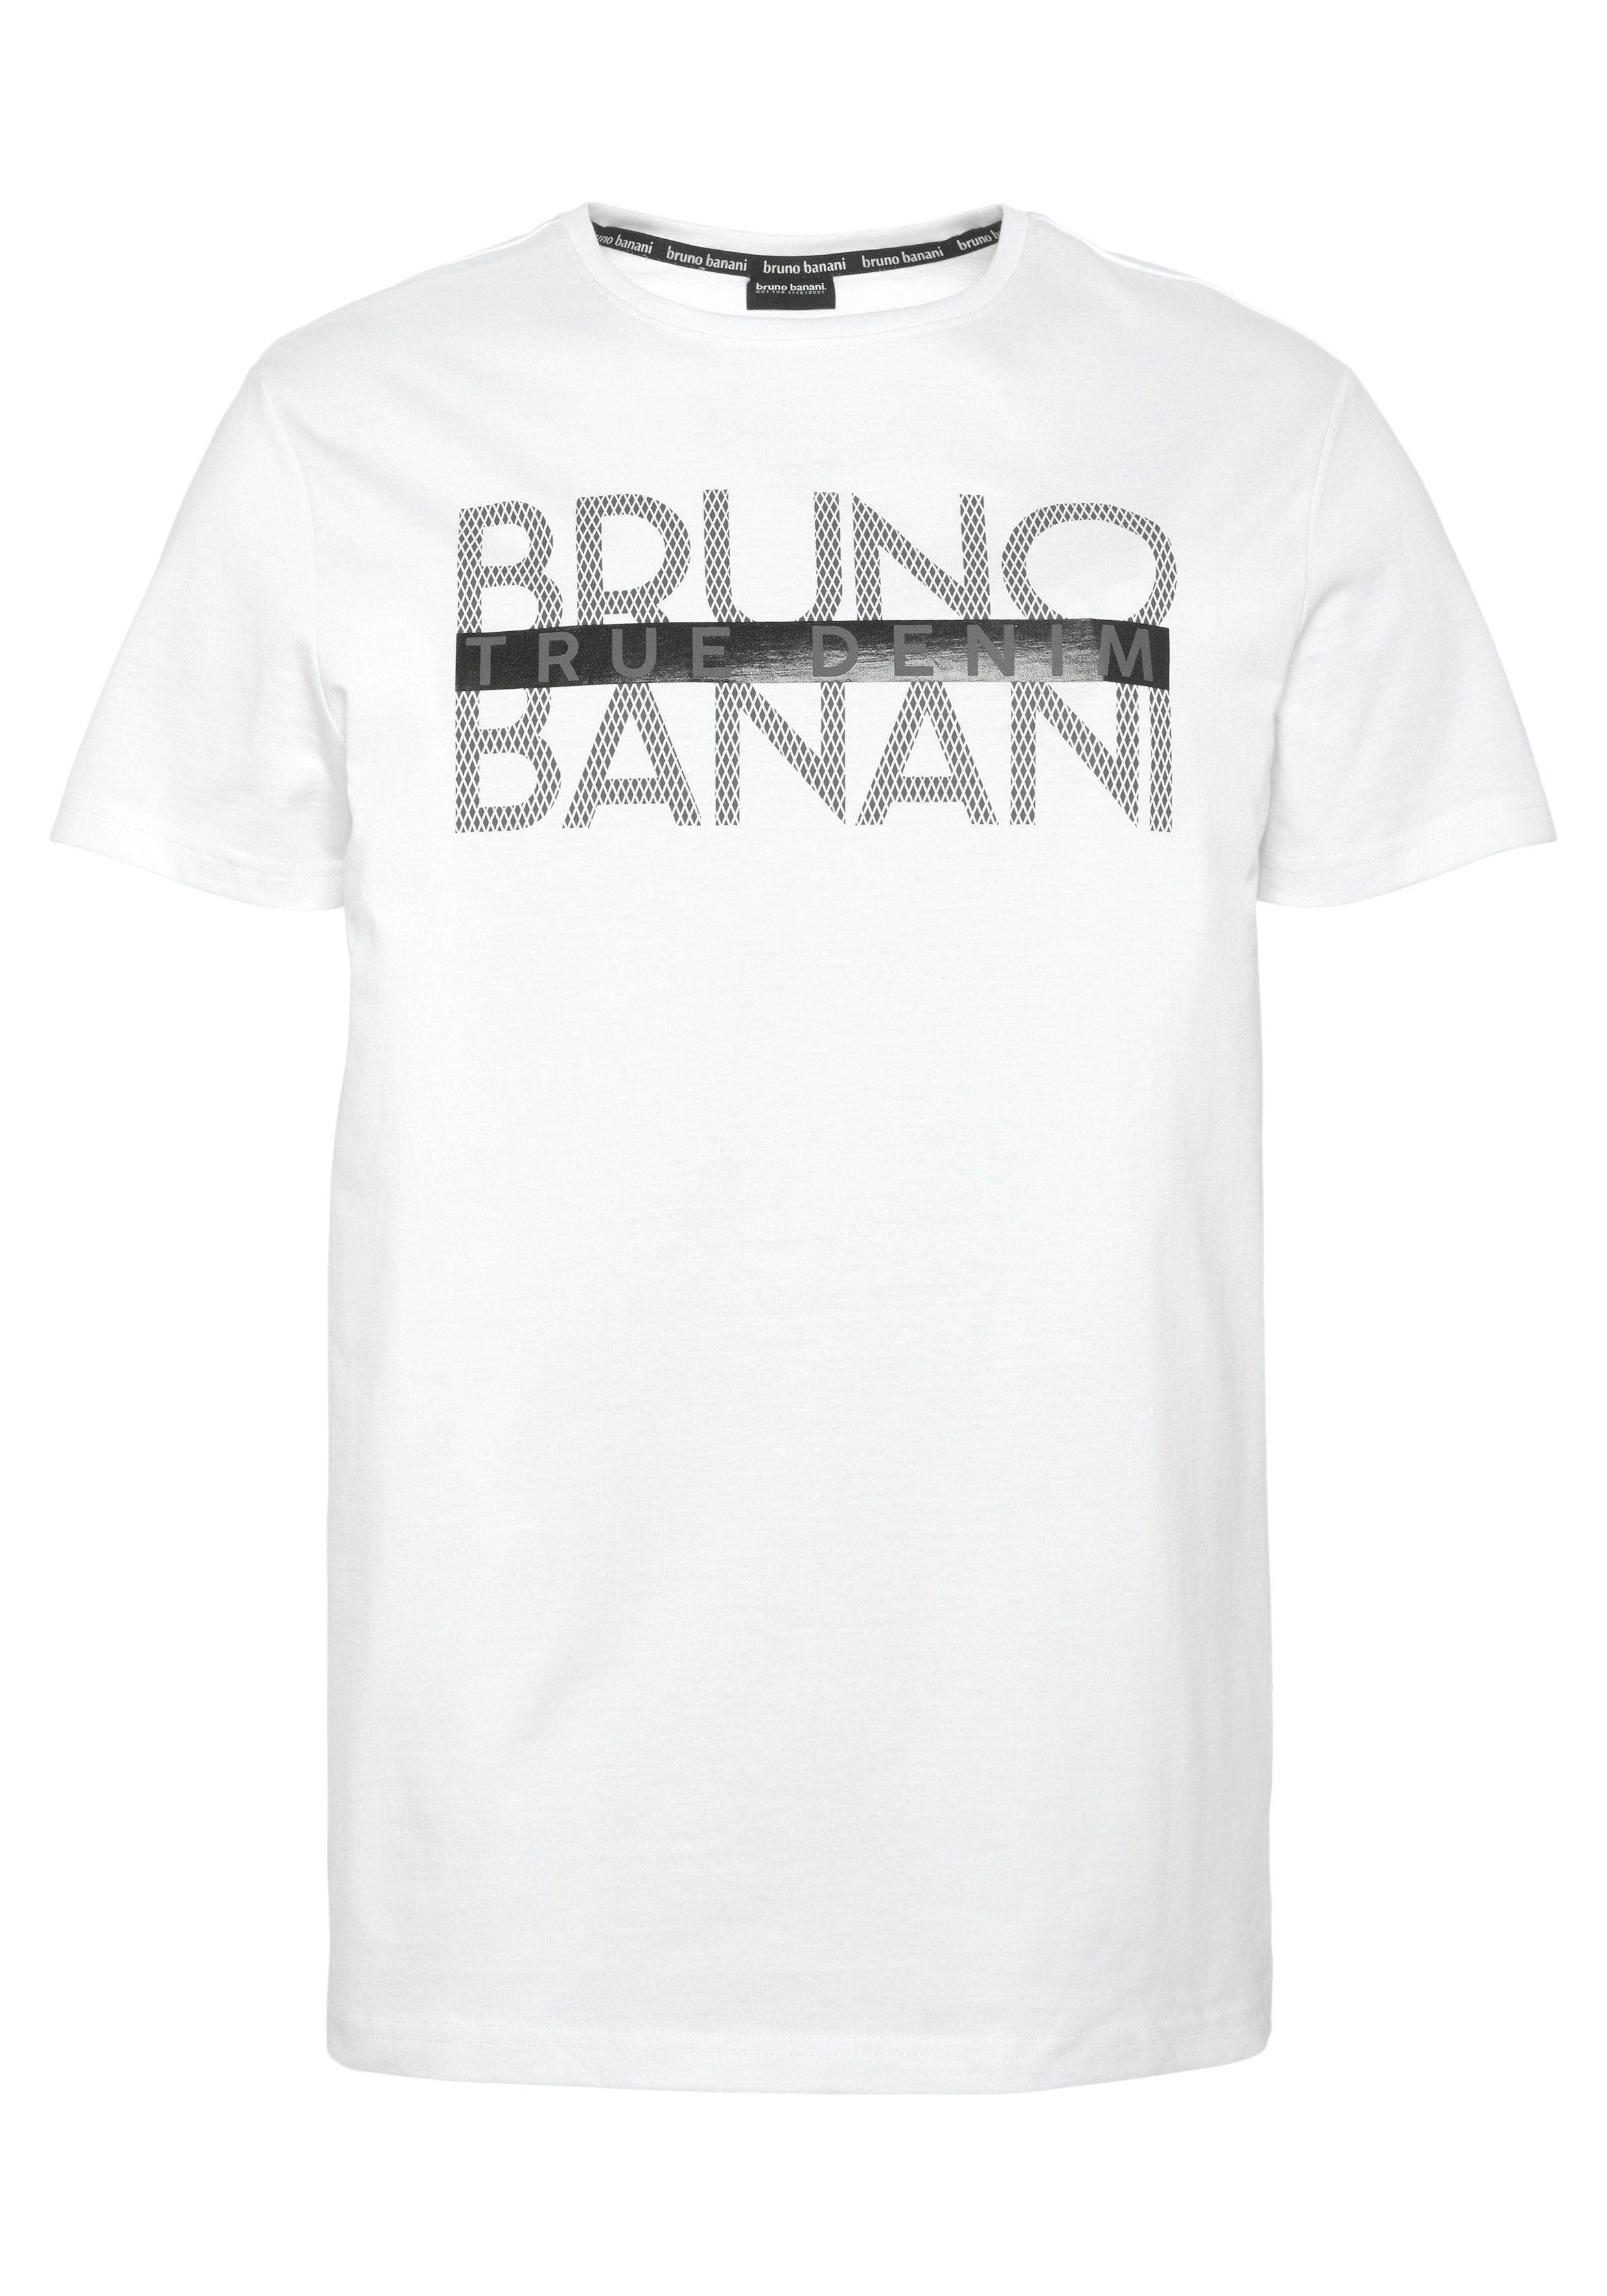 glänzendem Banani mit Bruno Print T-Shirt weiß